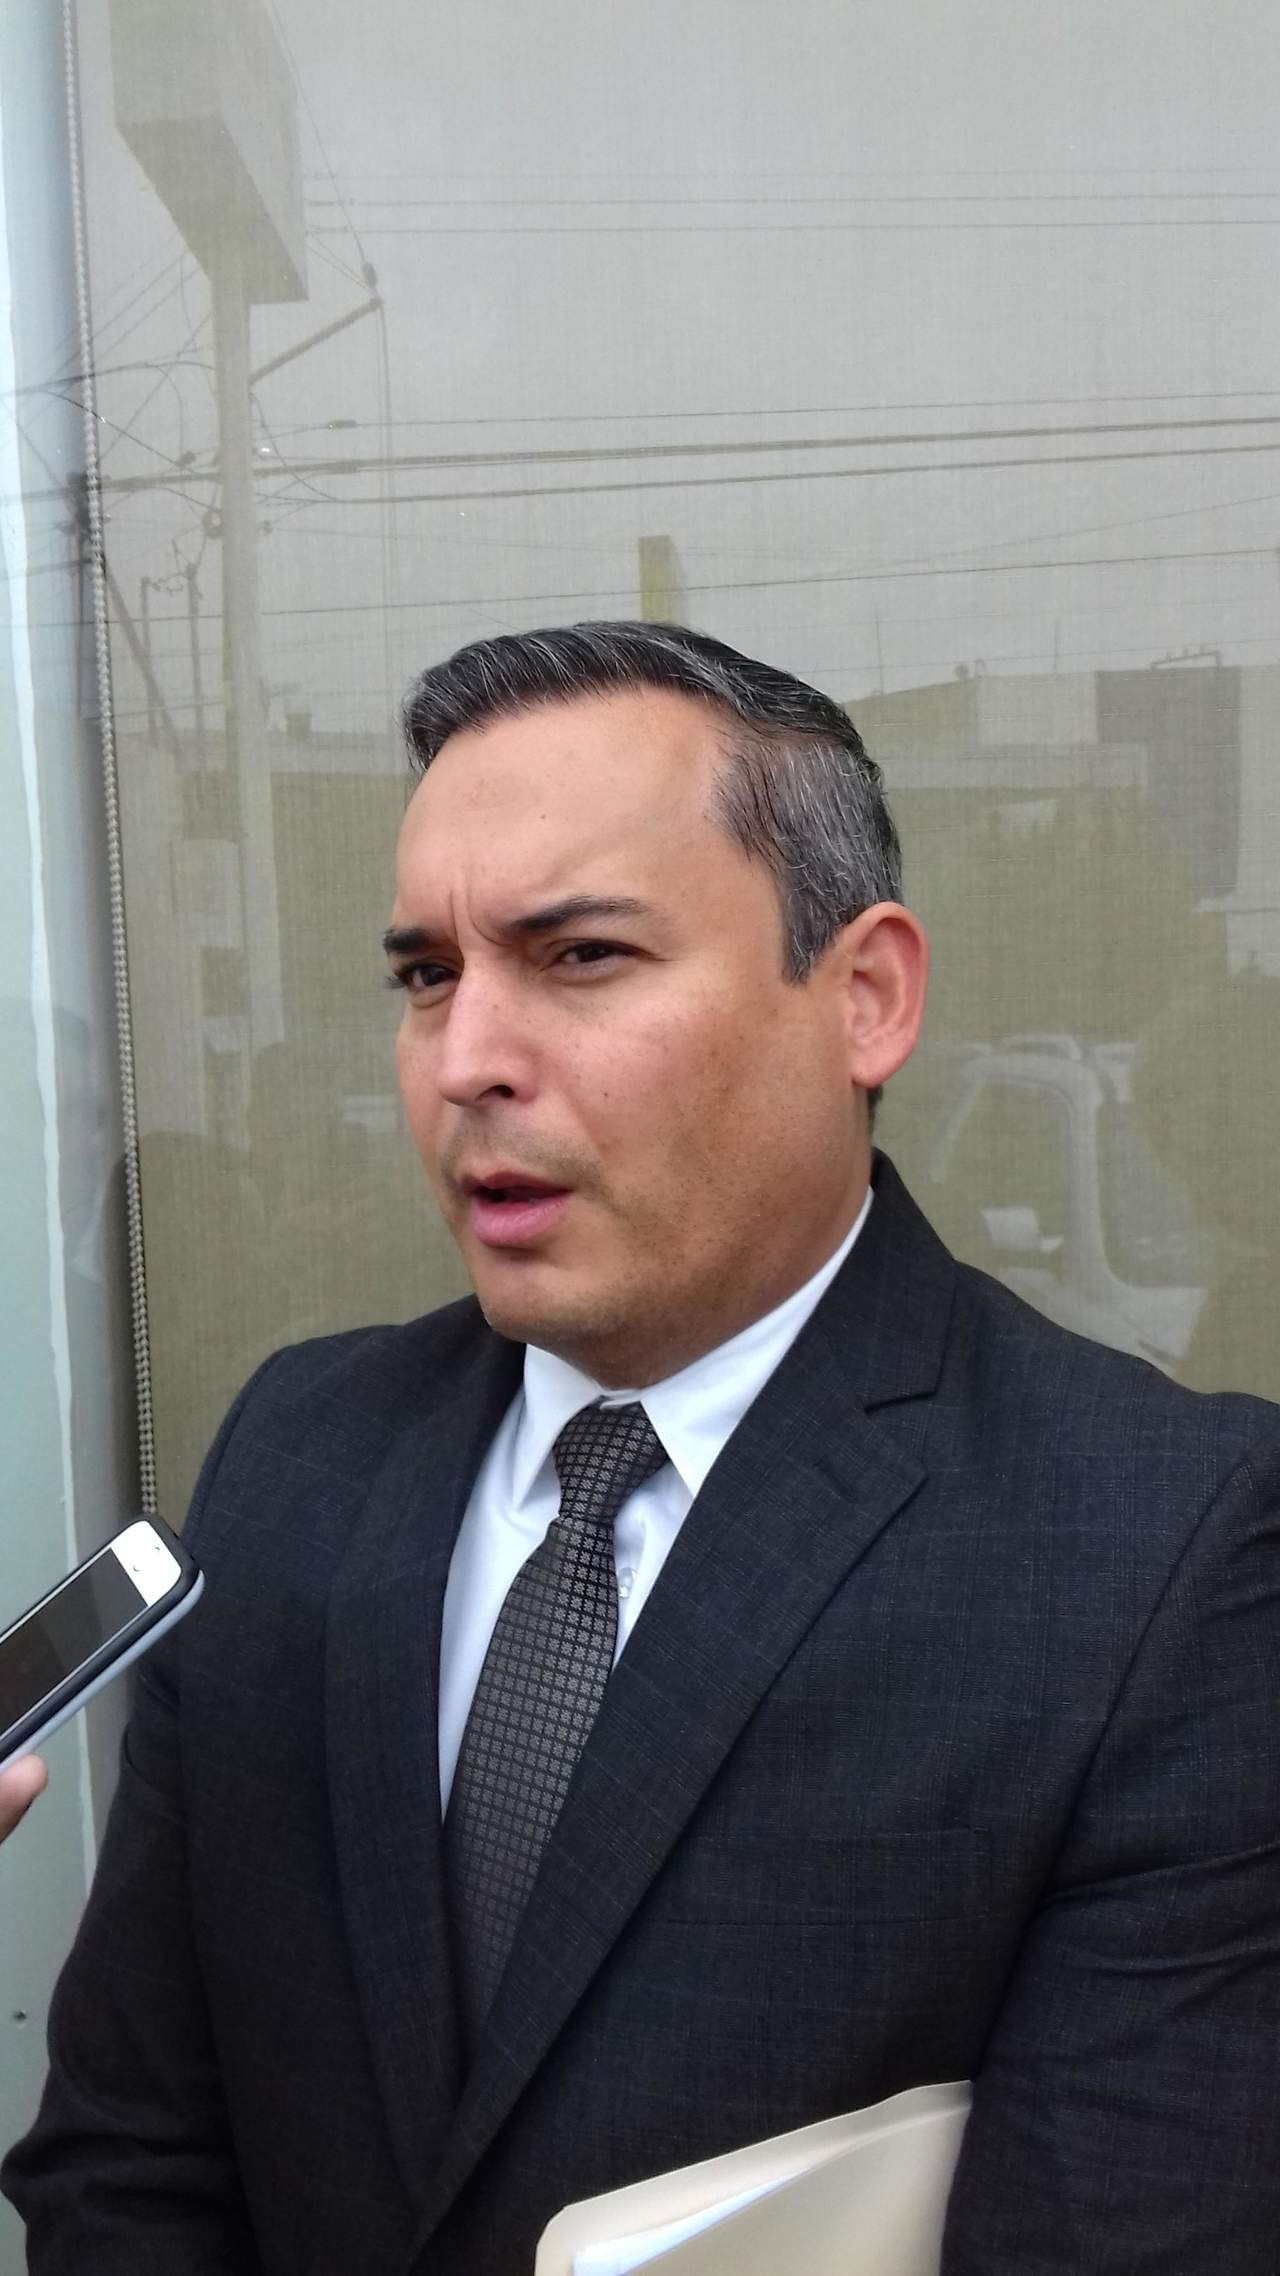 El diputado Edgar Sánchez Garza acudió a la Fiscalía Anticorrupción para interponer una denuncia contra la alcaldesa de San Pedro, así como contra otros cuatro funcionarios municipales más.